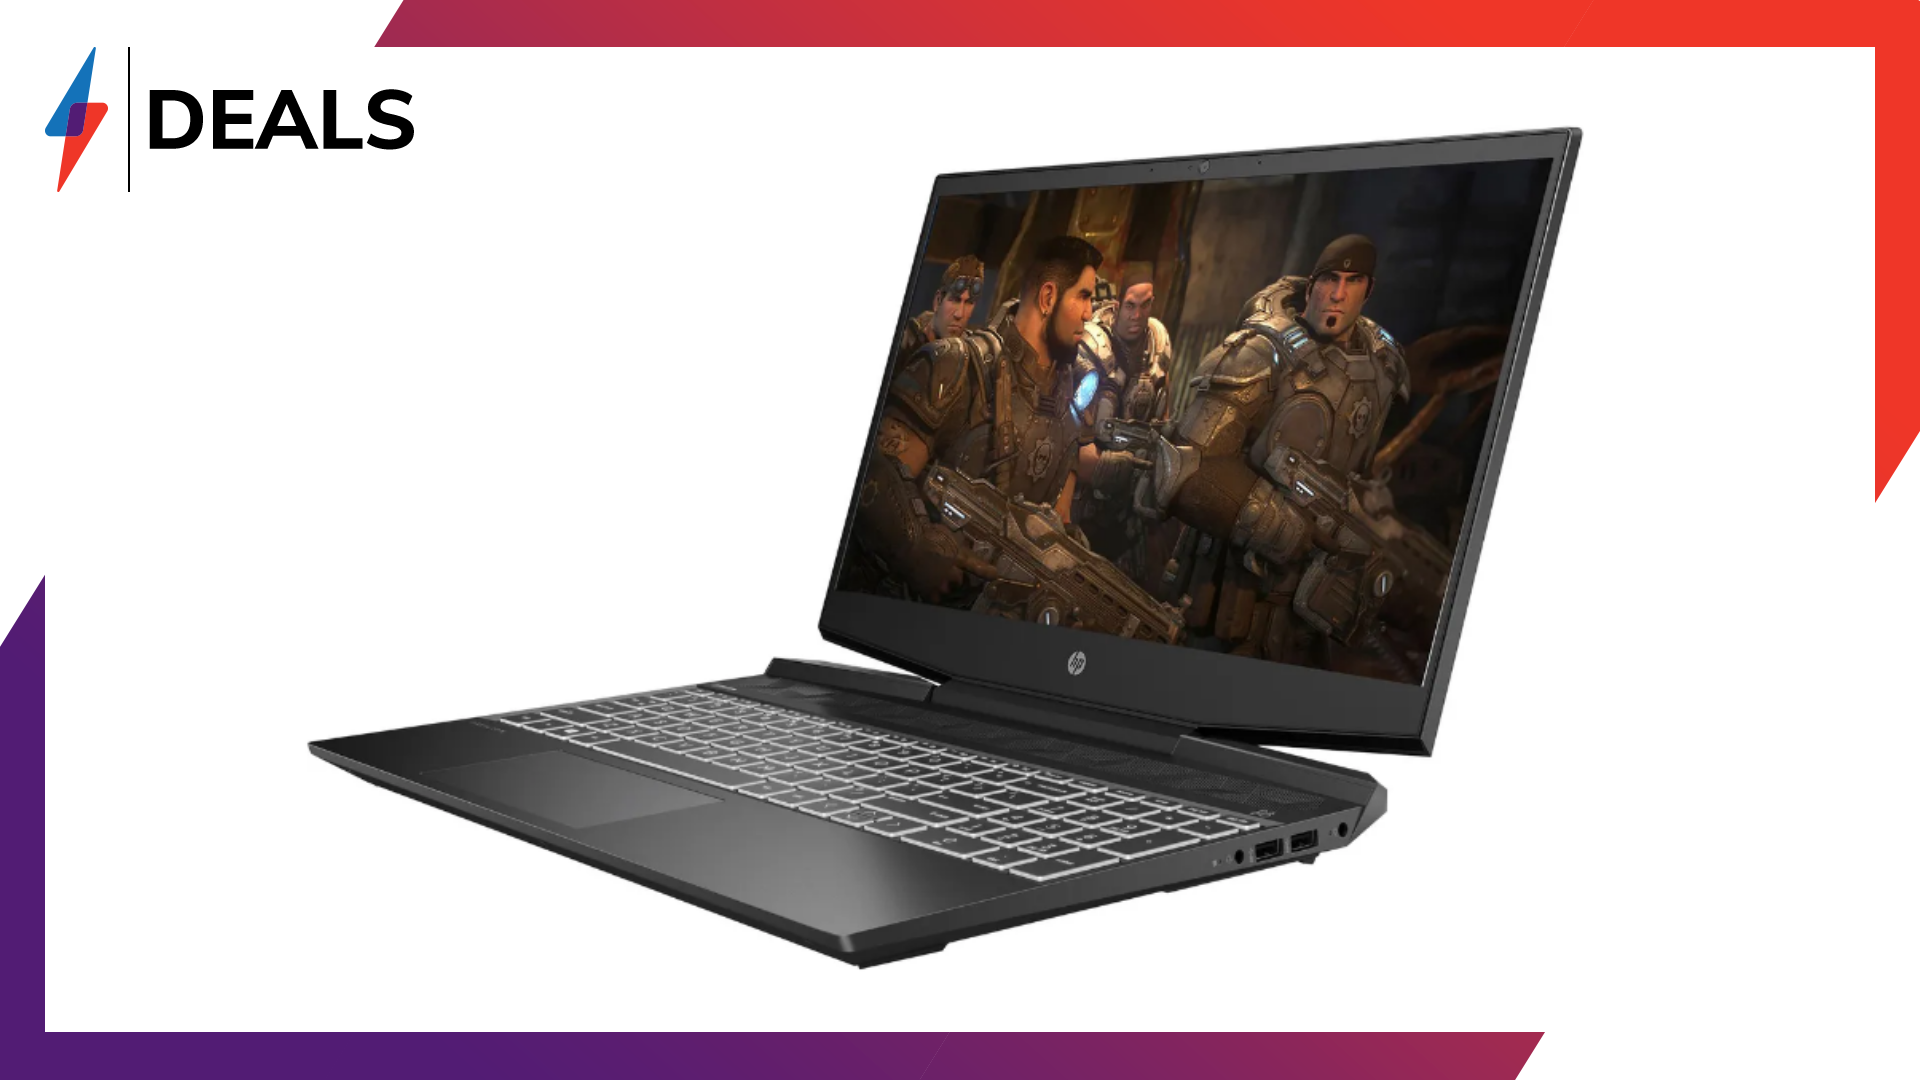 Schnappen Sie sich den HP Pavilion Gaming Laptop fuer unter 600